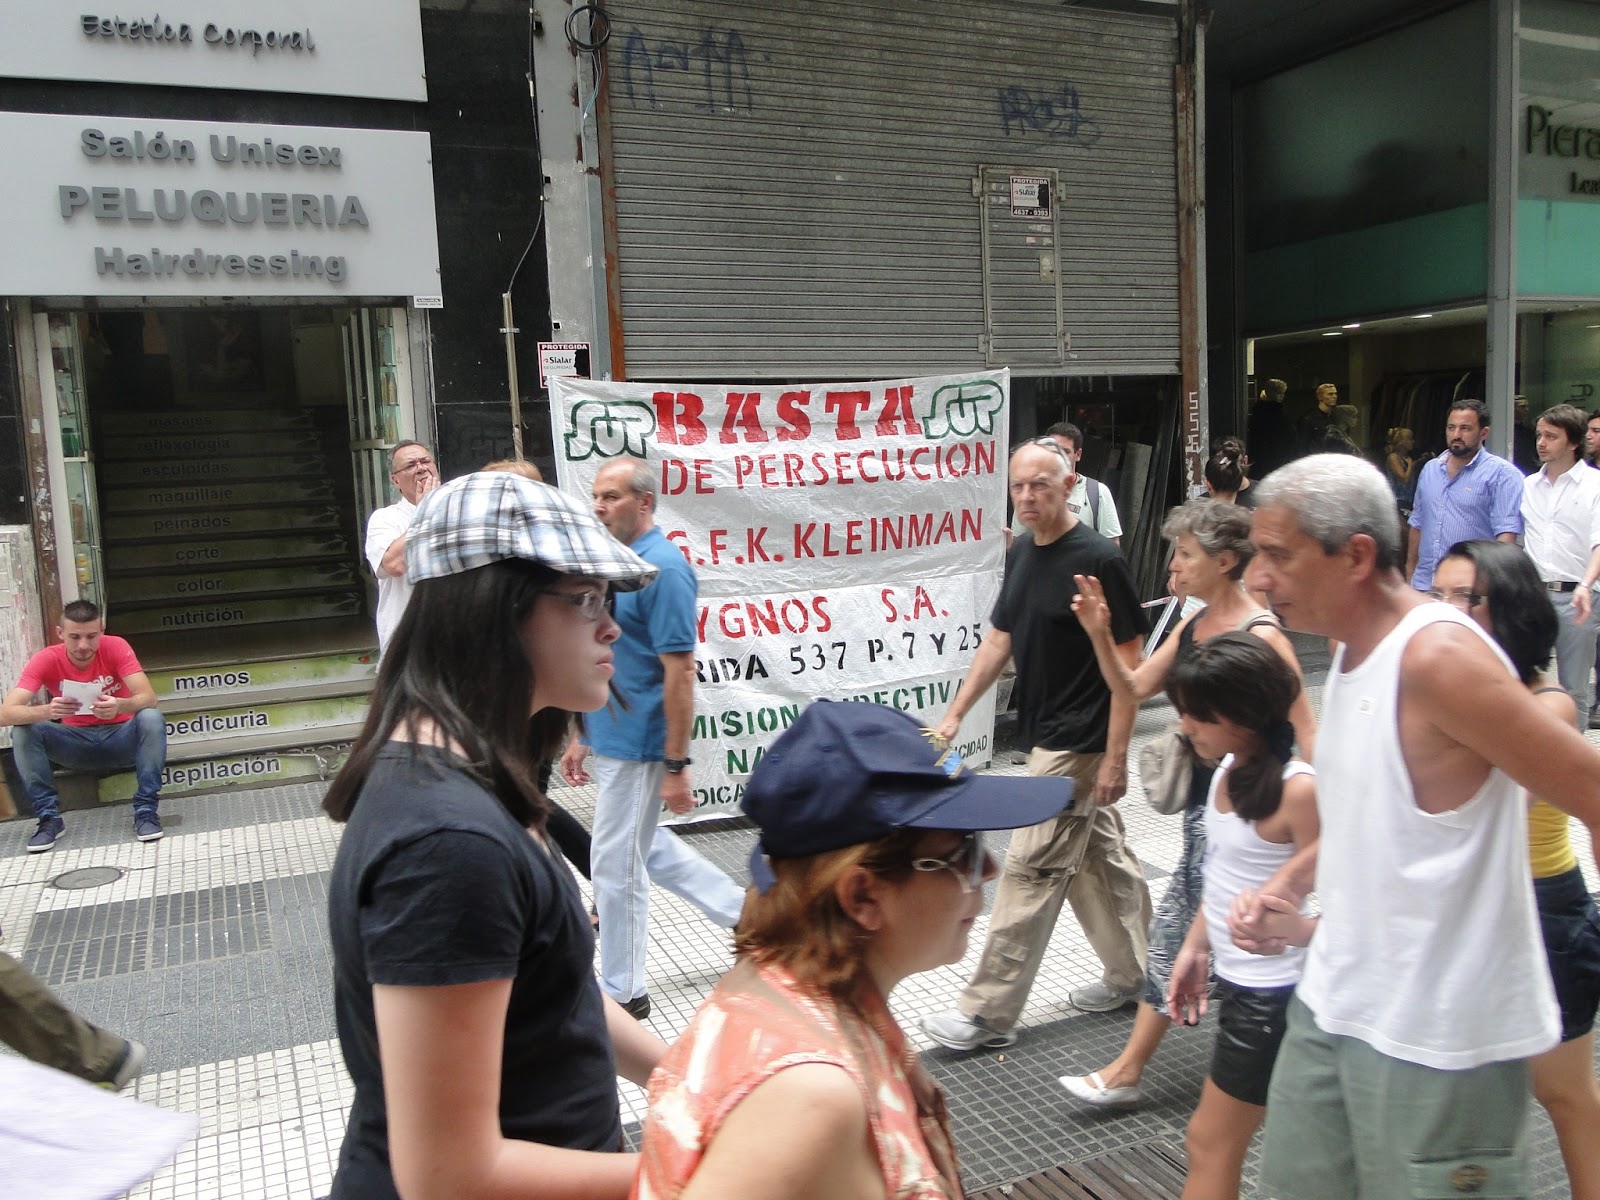 Protesta de los trabajadores de GFK Kleiman Sygnos